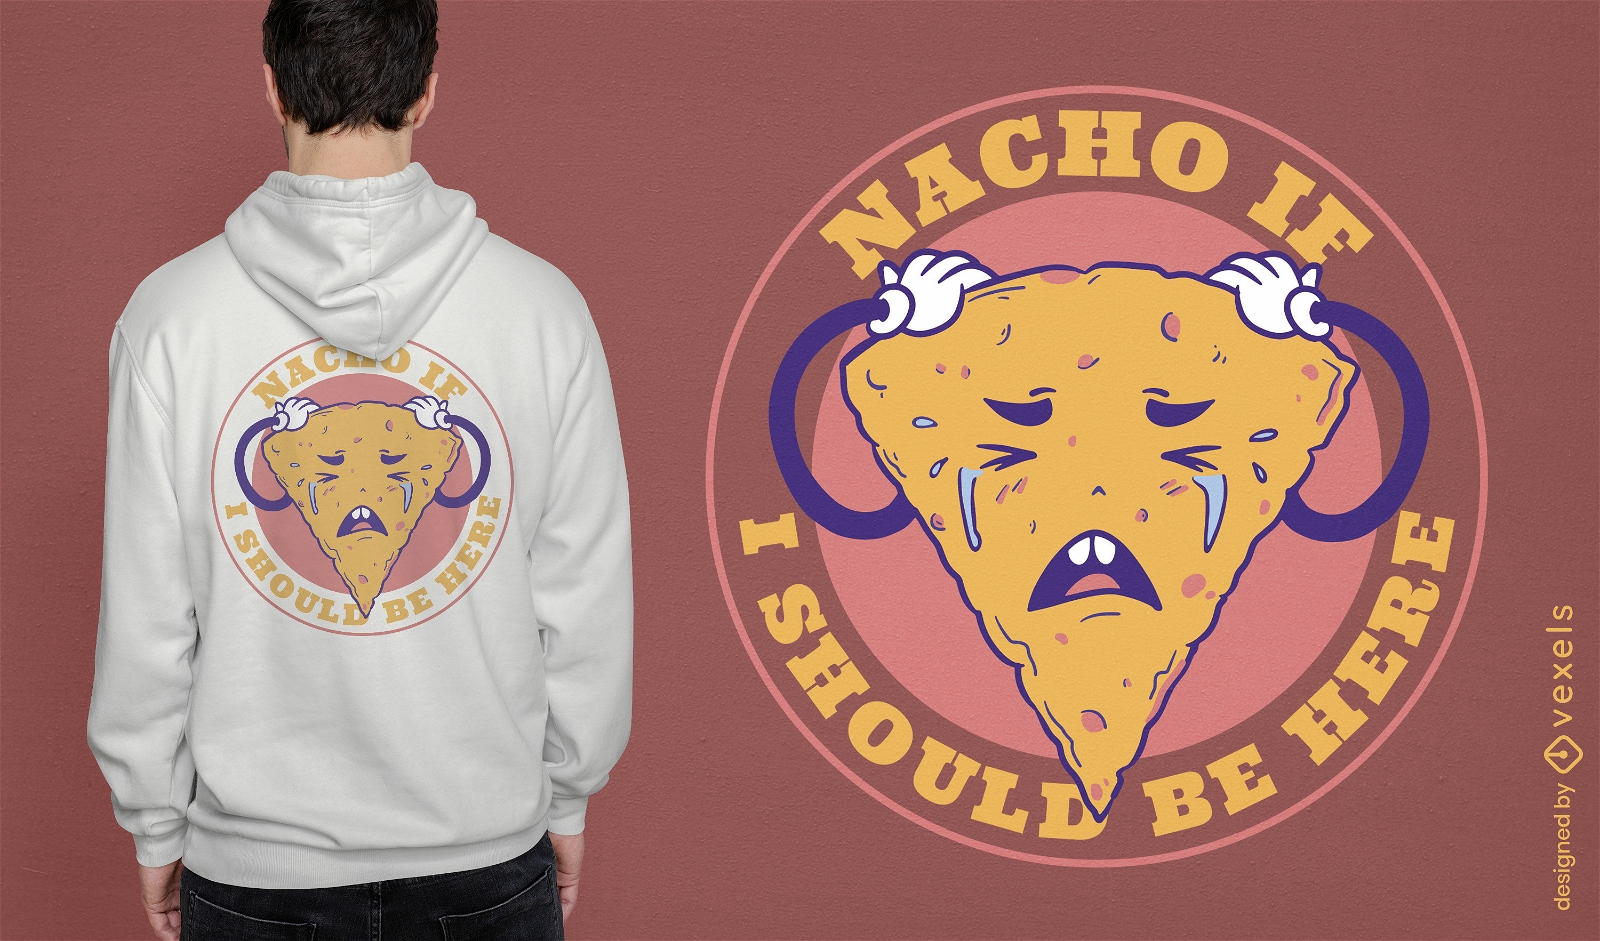 Nacho weinendes T-Shirt-Design